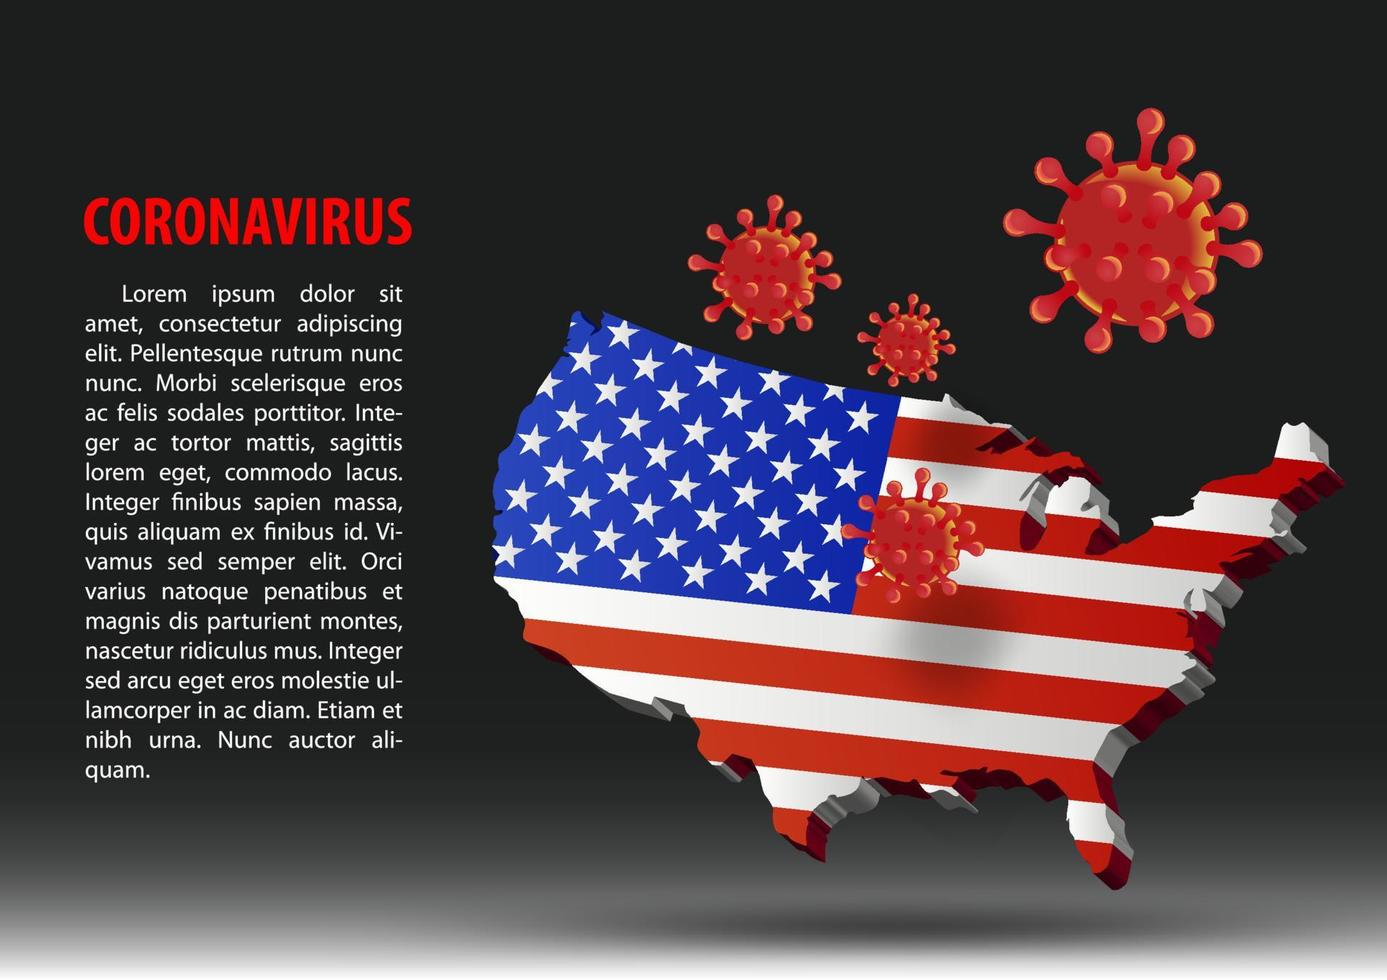 coronavirus flyga över karta över usa inom den nationella flaggan vektor